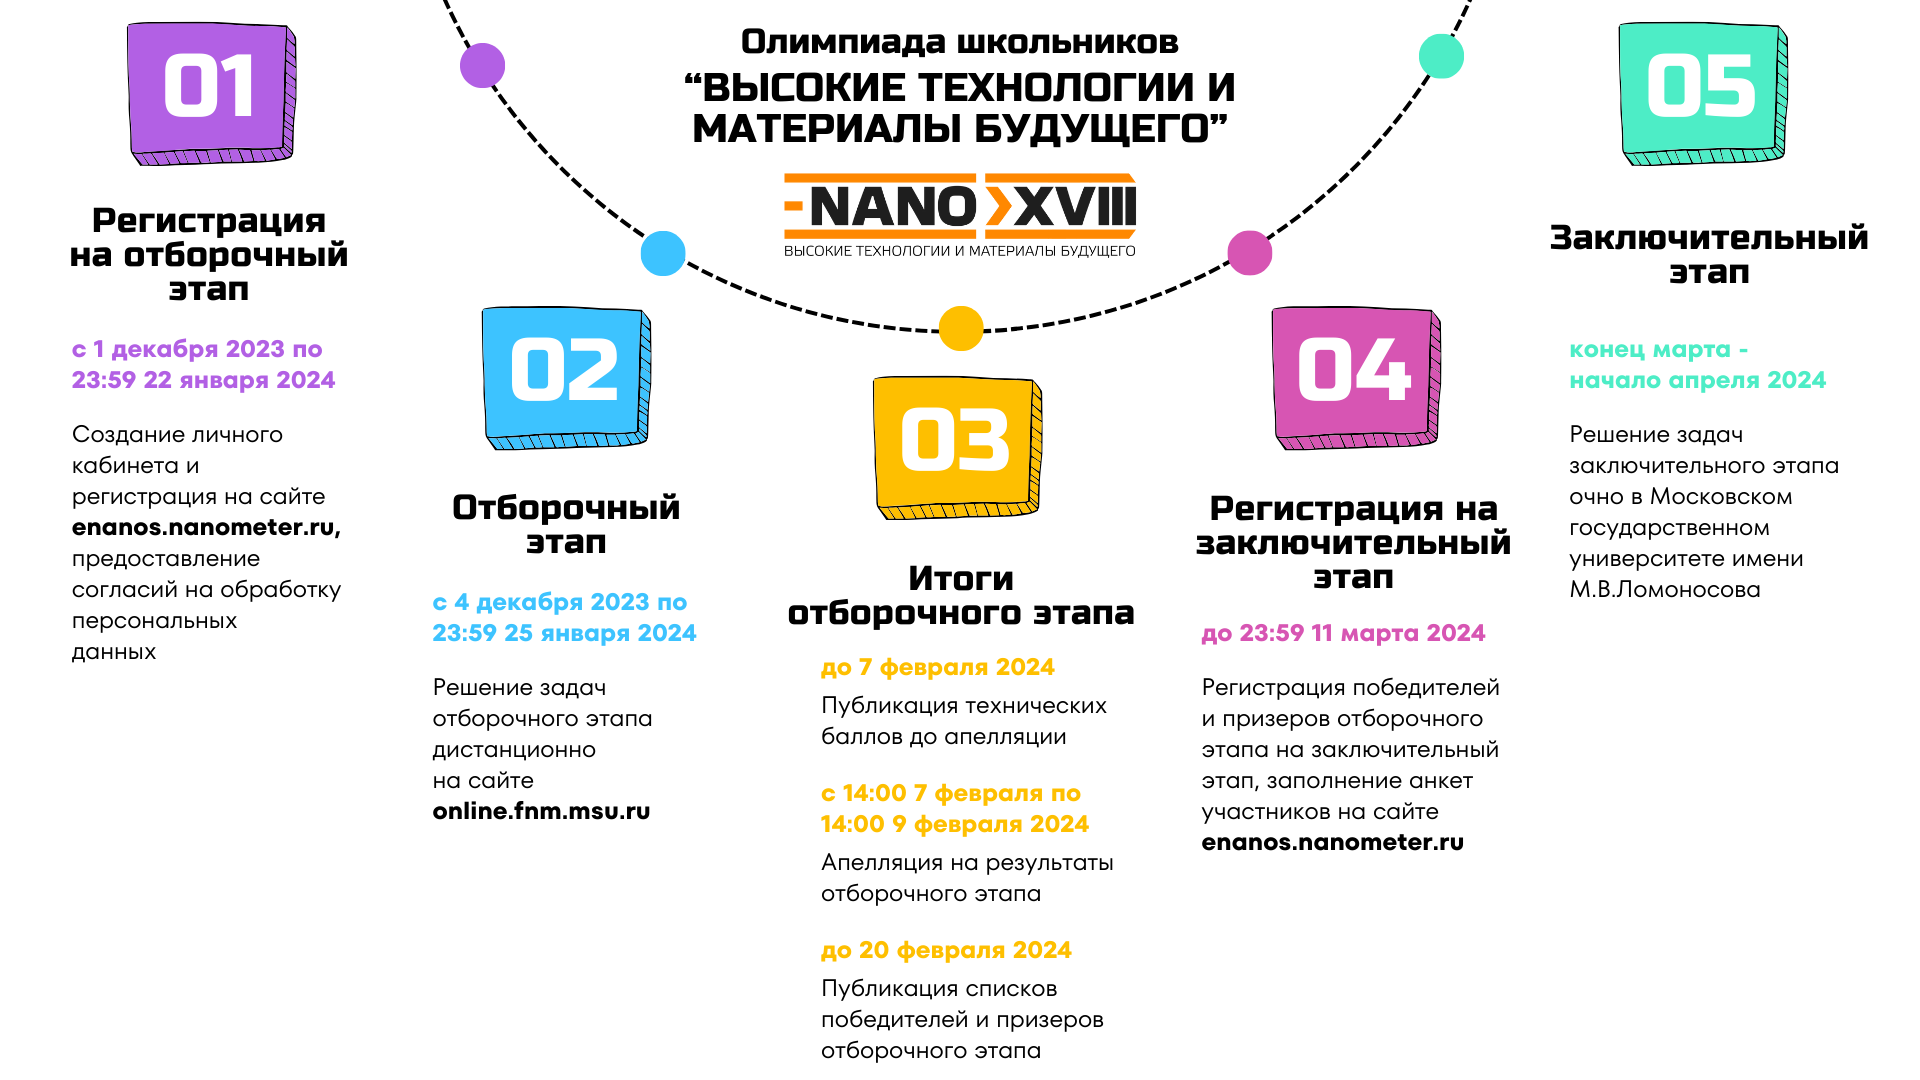 Всероссийская интернет-олимпиада по нанотехнологиям.